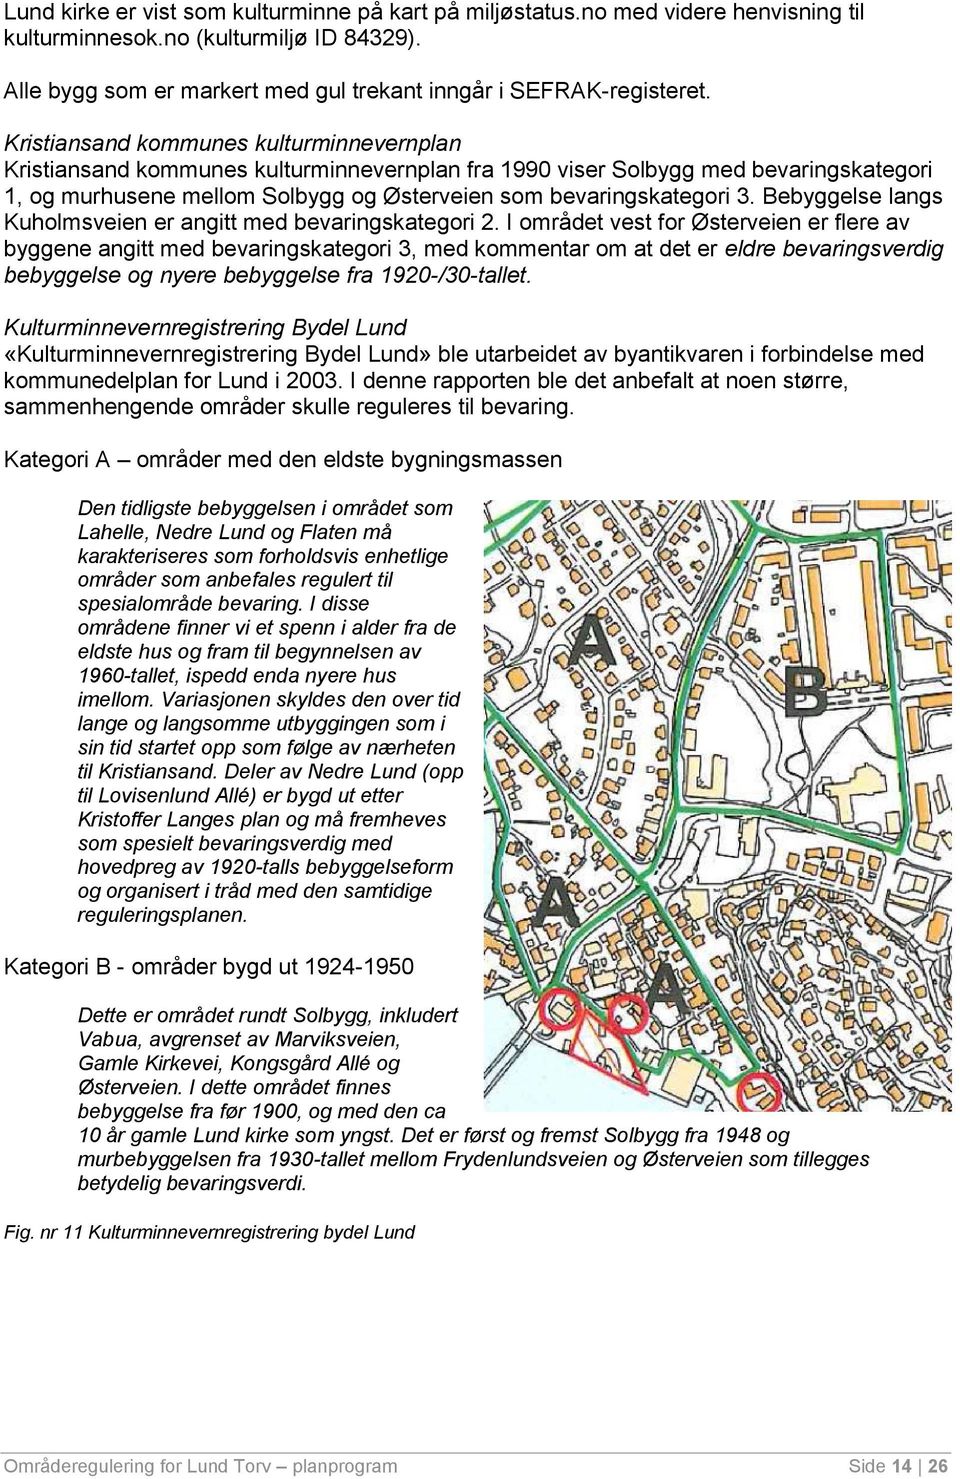 Bebyggelse langs Kuholmsveien er angitt med bevaringskategori 2.